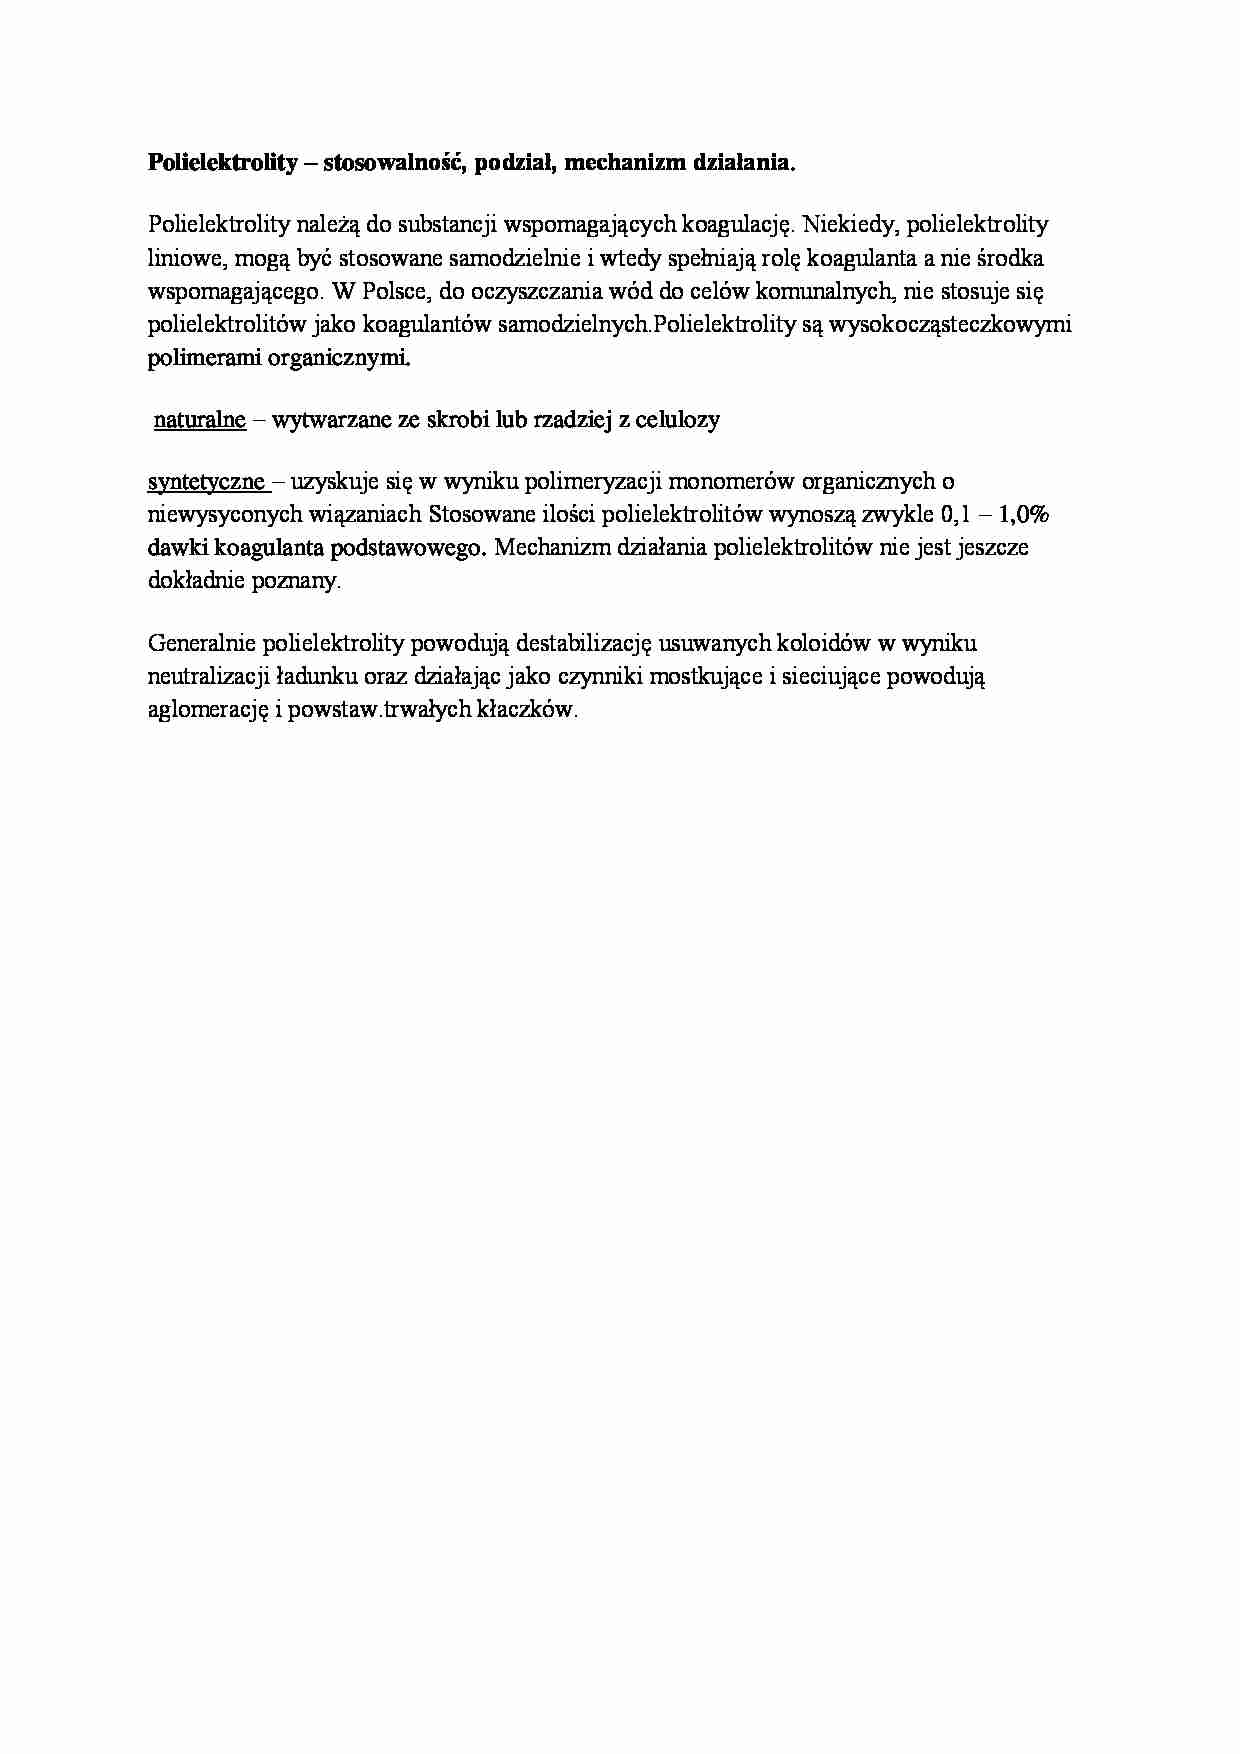 Polielektrolity - omówienie - strona 1